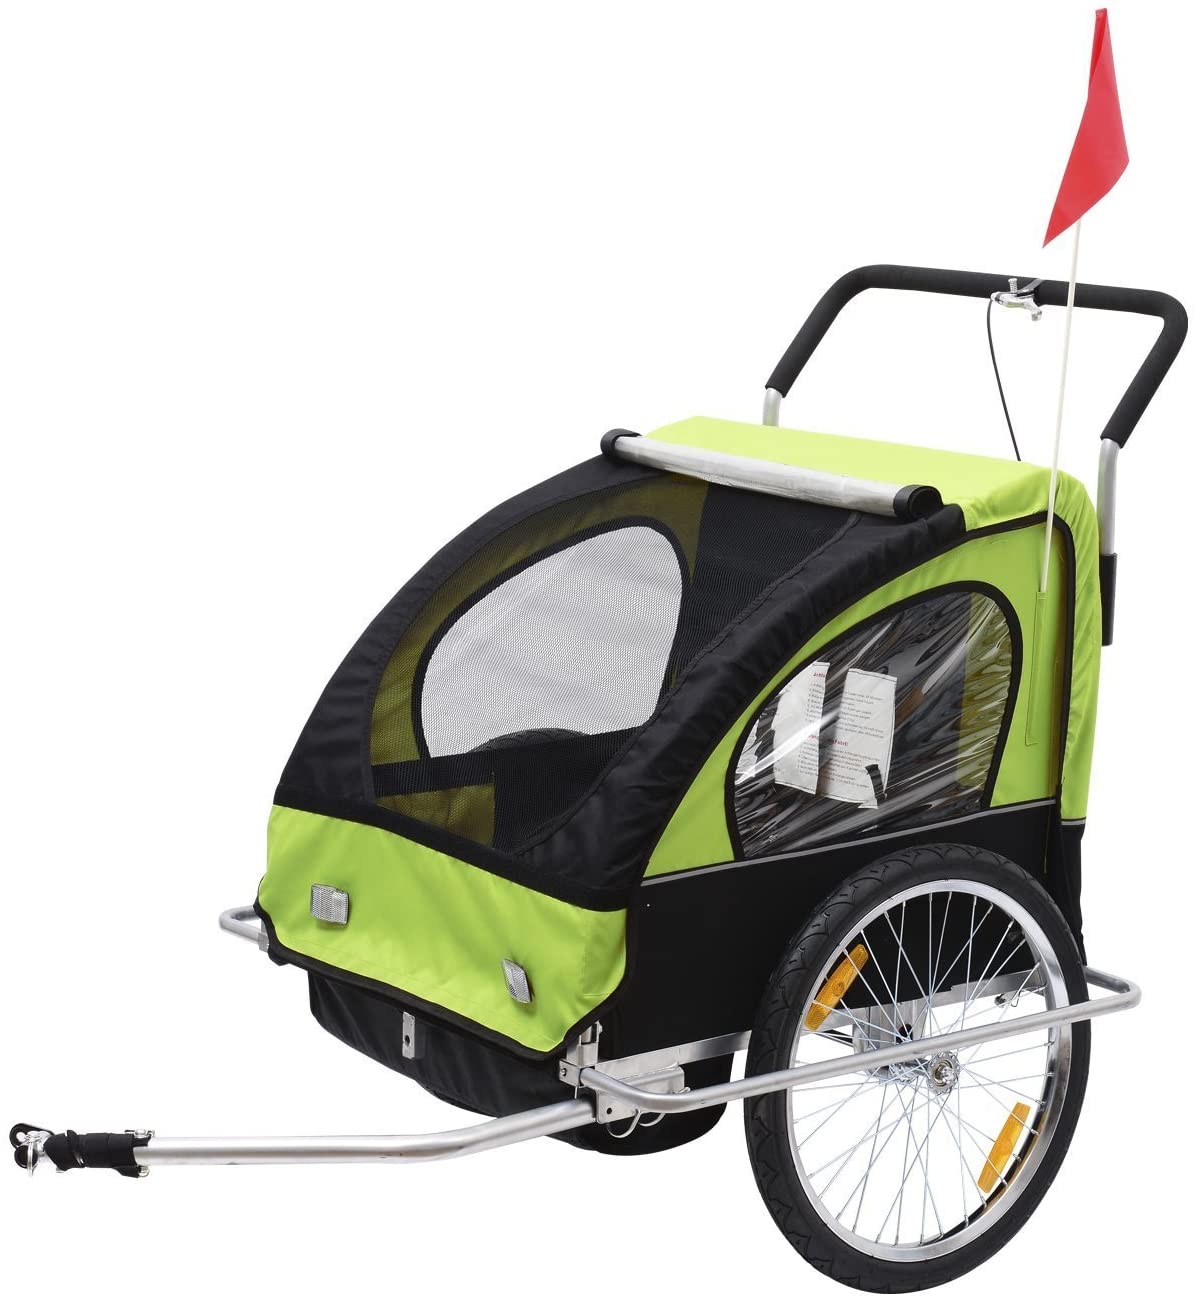  HOMCOM Remolque para Niños Dos PLAZAS con Amortiguadores Carro para Bicicleta con Barra INCLUIDA y Kit de Footing Color Verde y Negro 